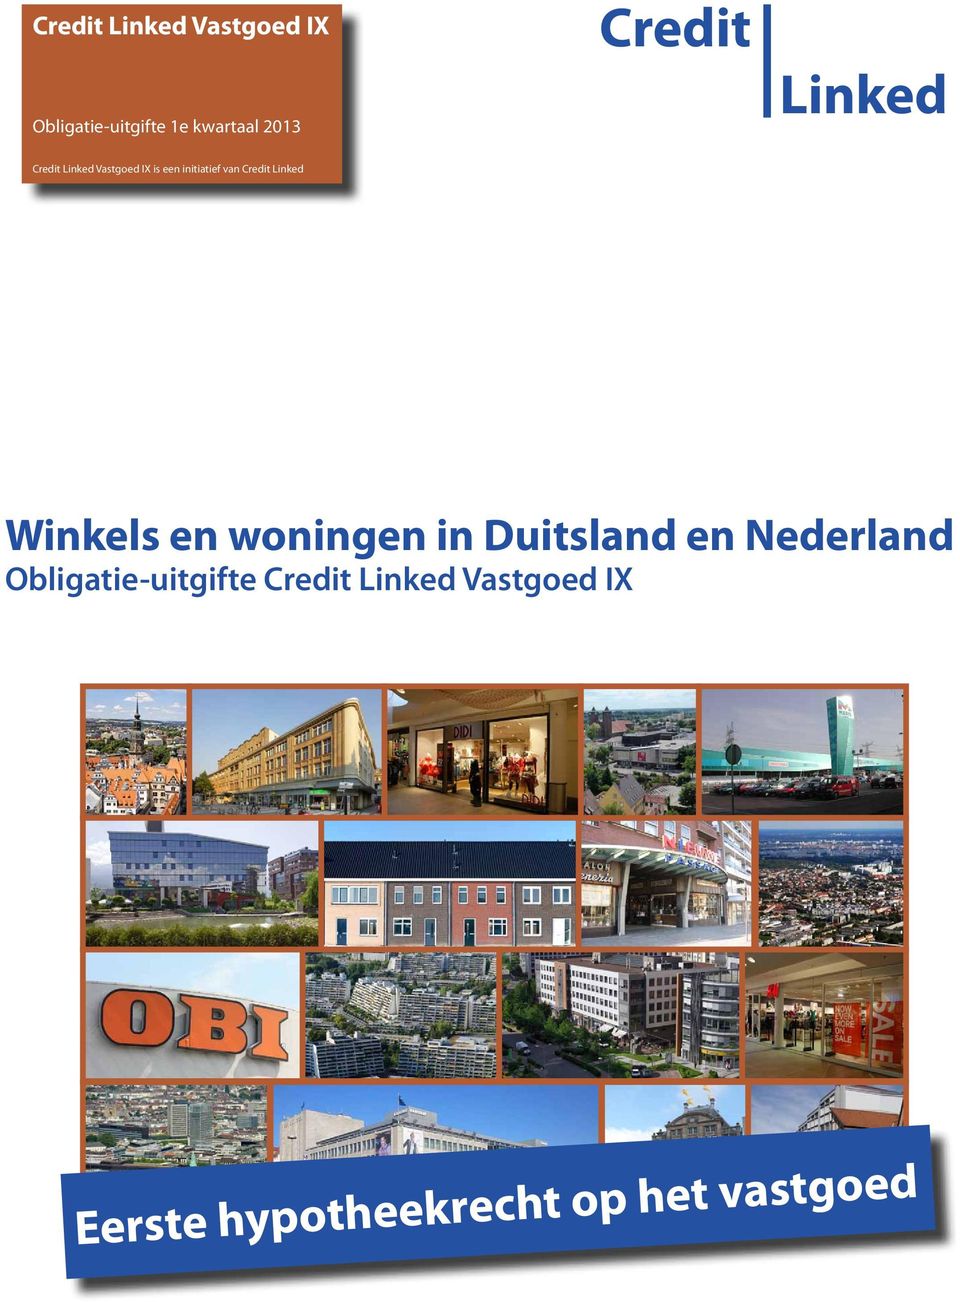 Credit Linked Winkels en woningen in Duitsland en Nederland